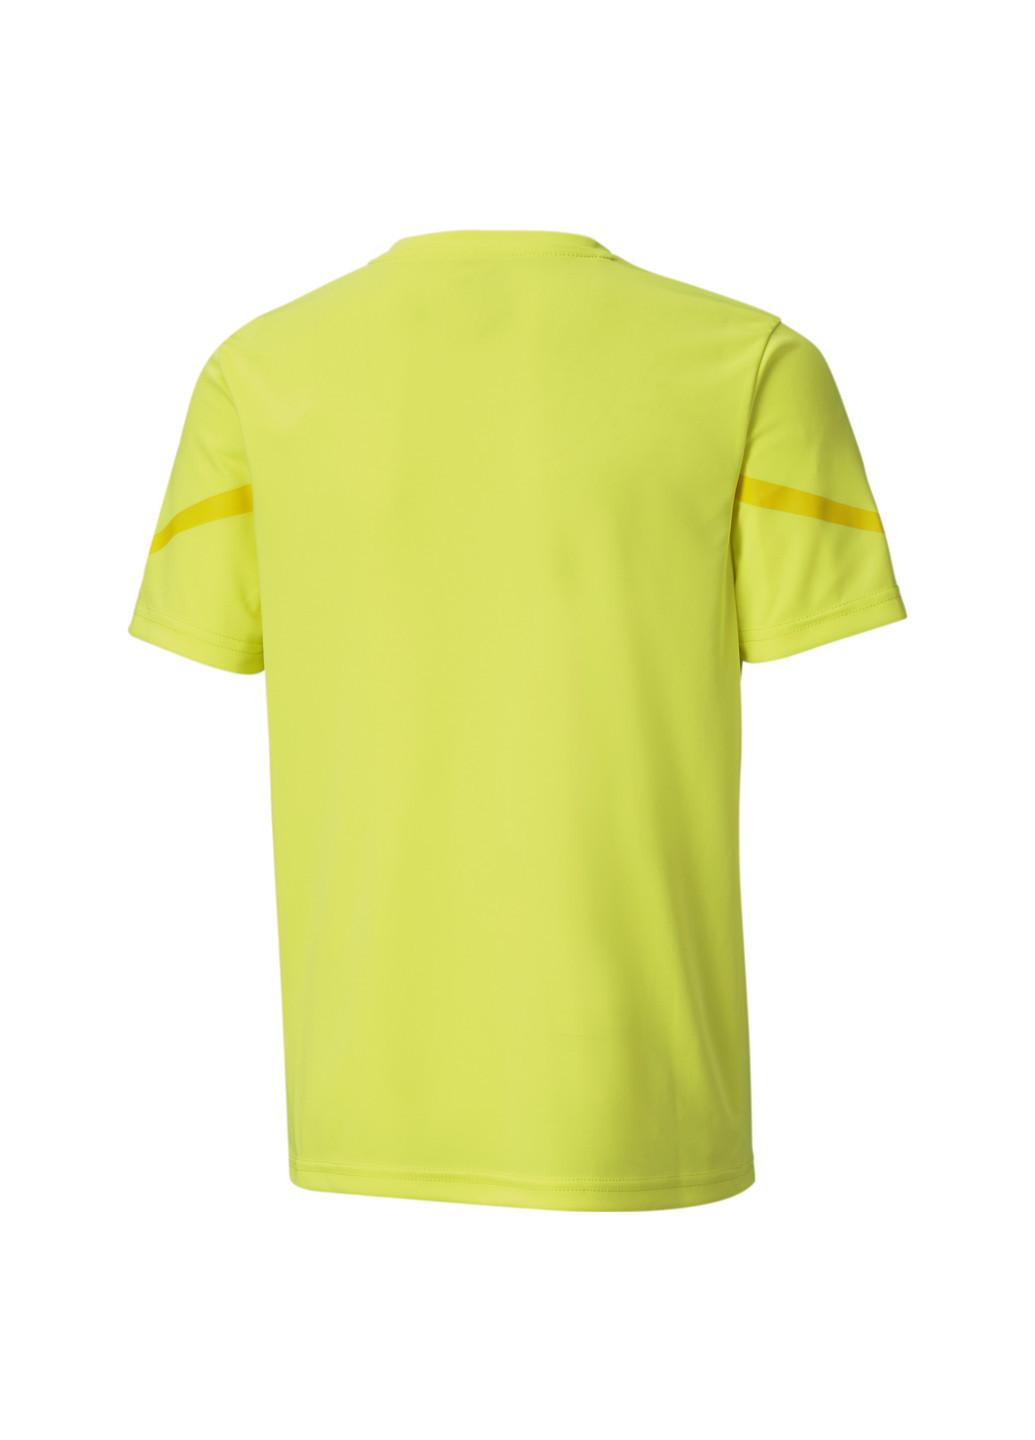 Желтая демисезонная футболка Puma